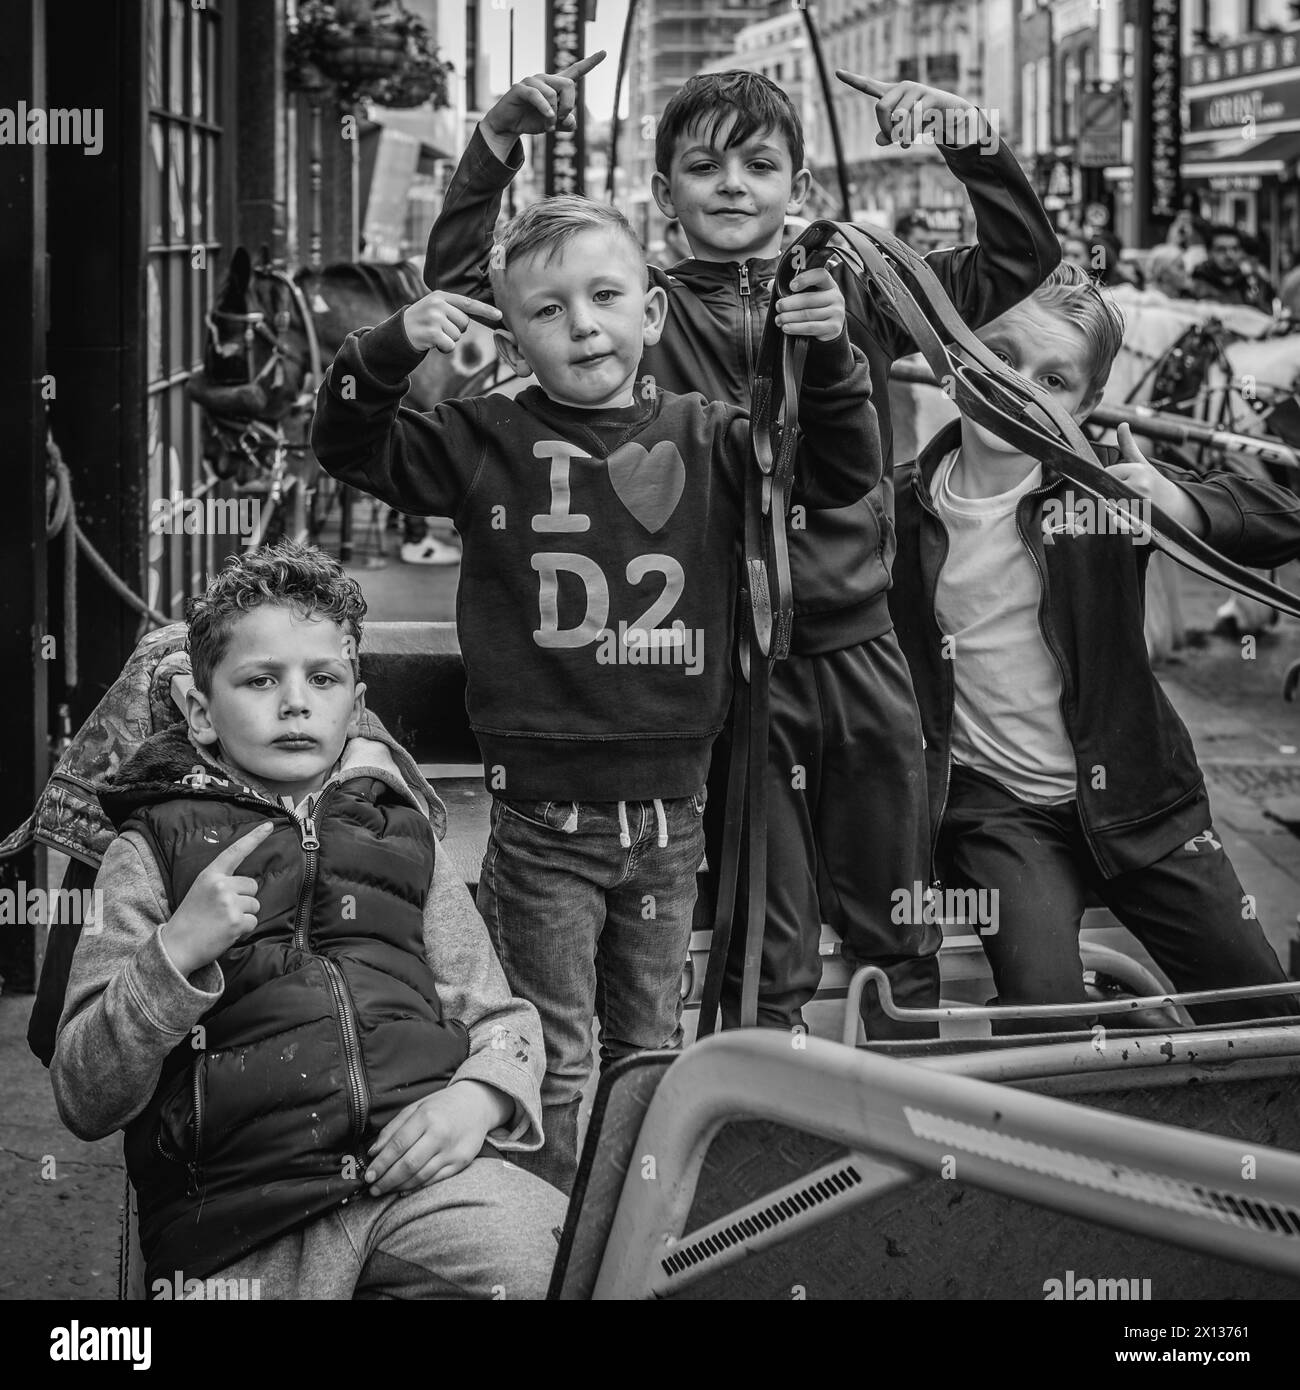 Immagine in bianco e nero di giovani rom e viaggiatori in posa in un carretto da cavalli mentre viaggiano attraverso Chinatown per l'evento "The London Drive". Foto Stock